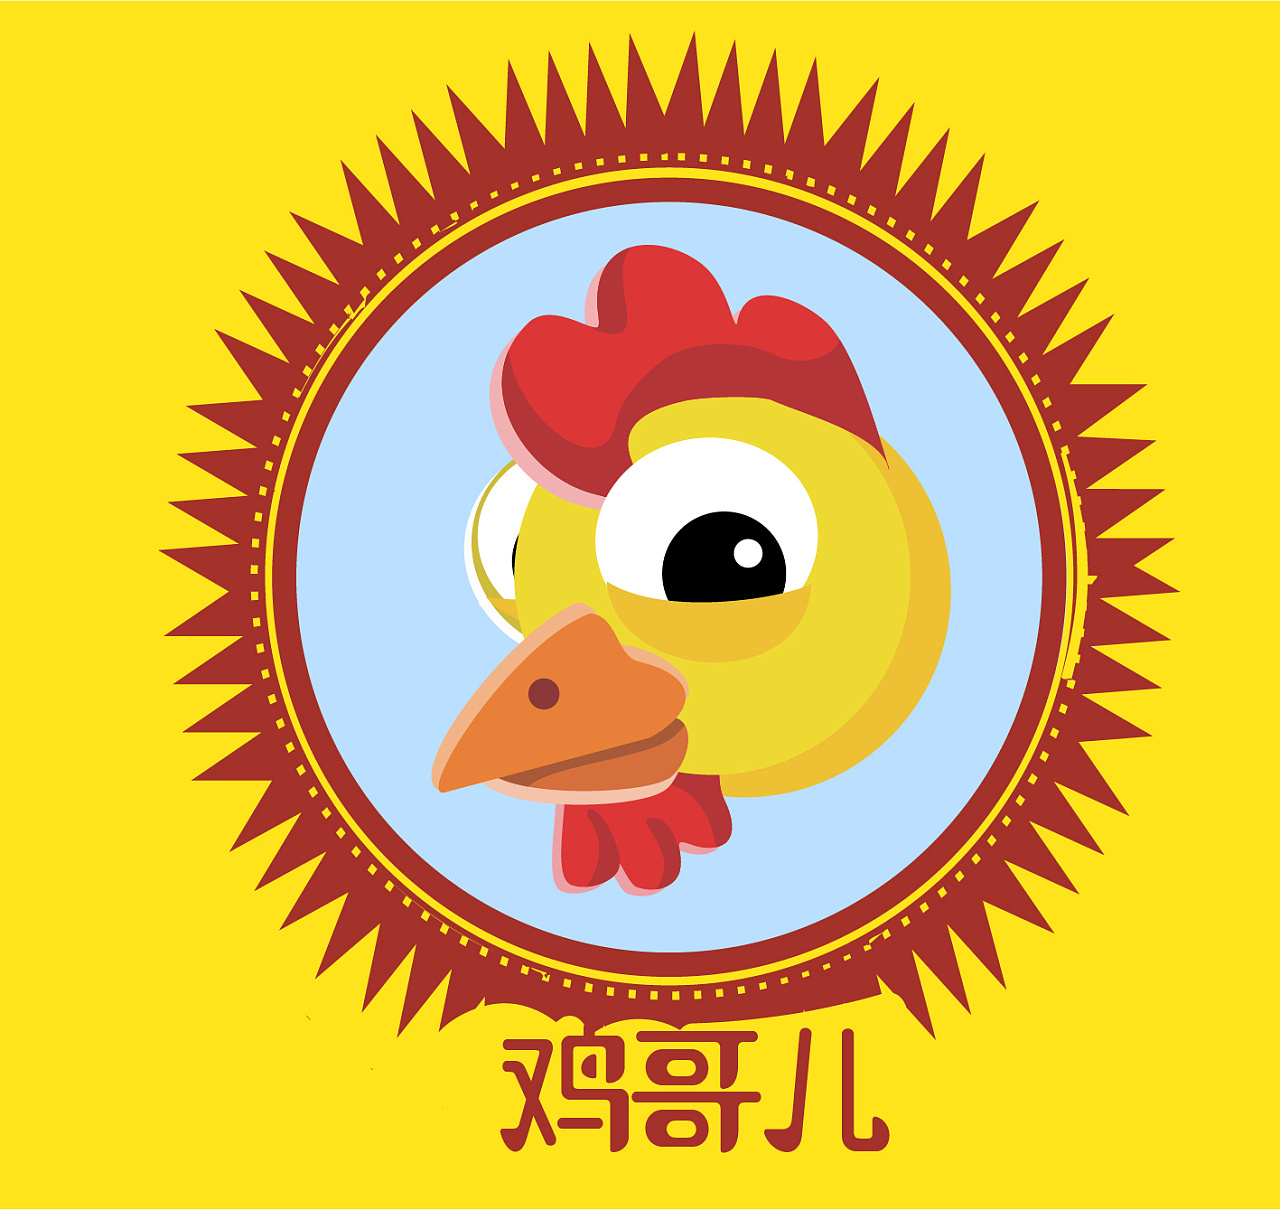 亳州斗鸡 - 鸡品种大全 - 鸡病专业网